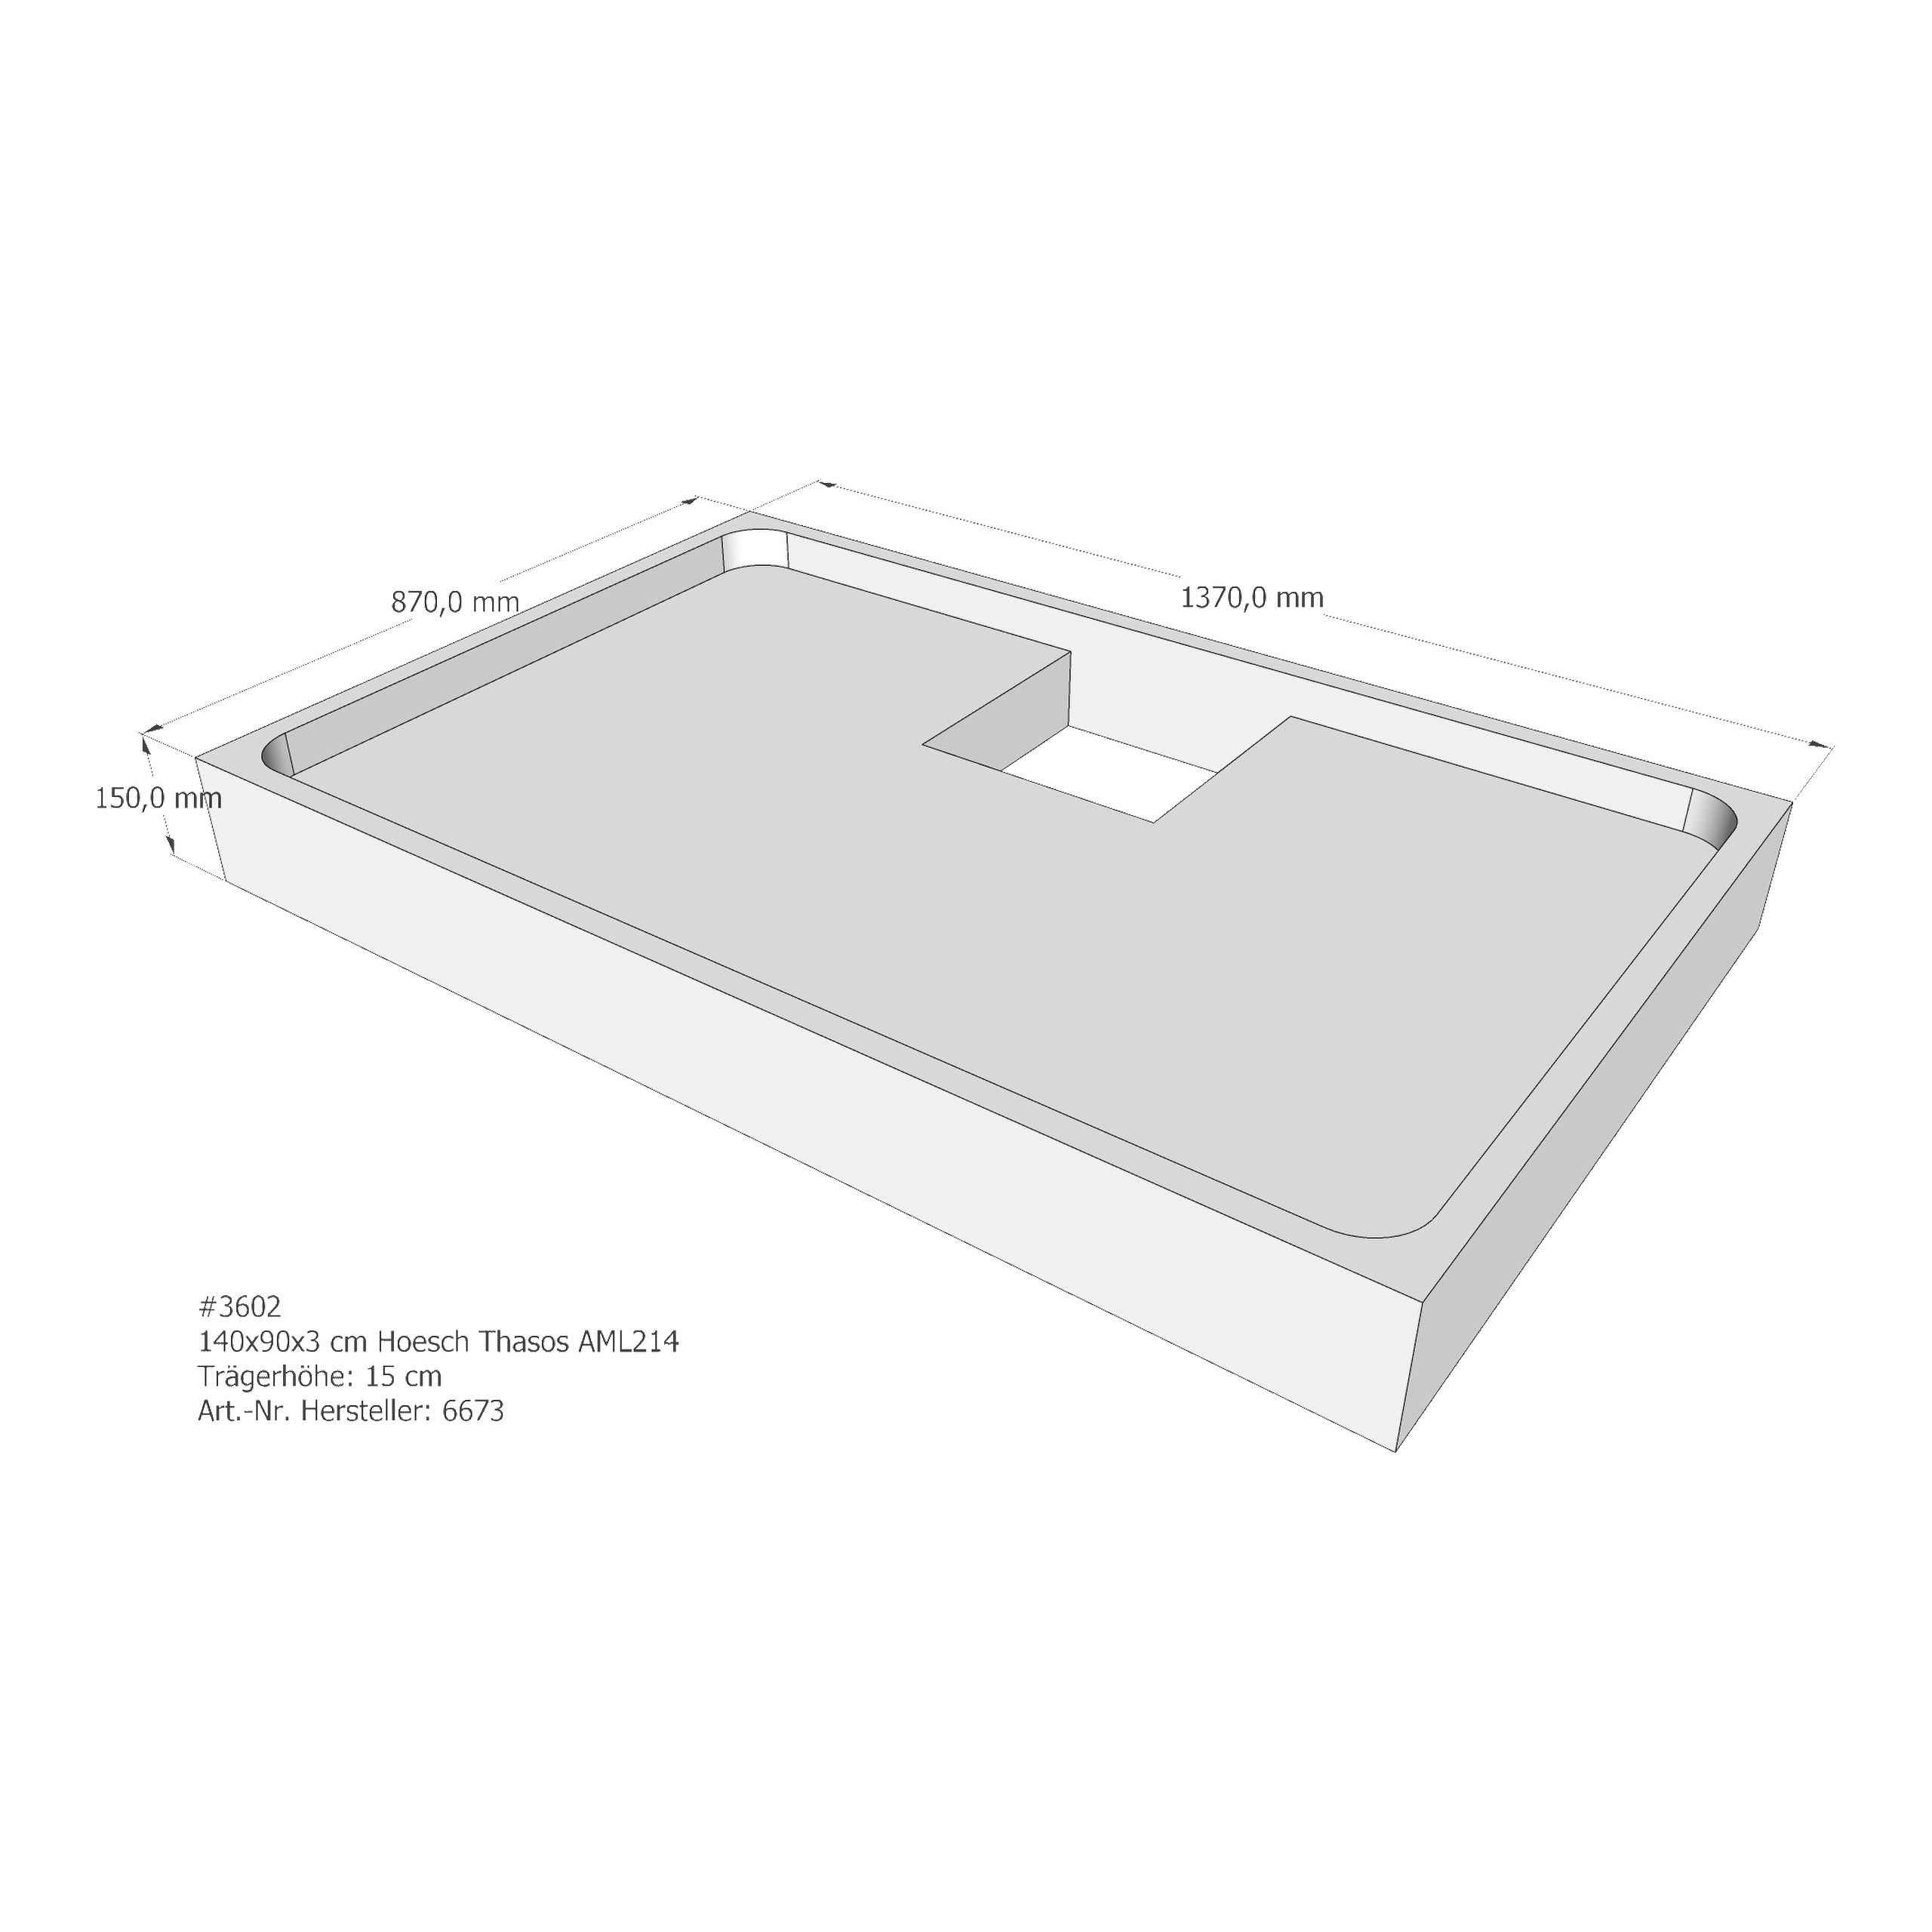 Duschwannenträger für Hoesch Thasos 140 × 90 × 3 cm